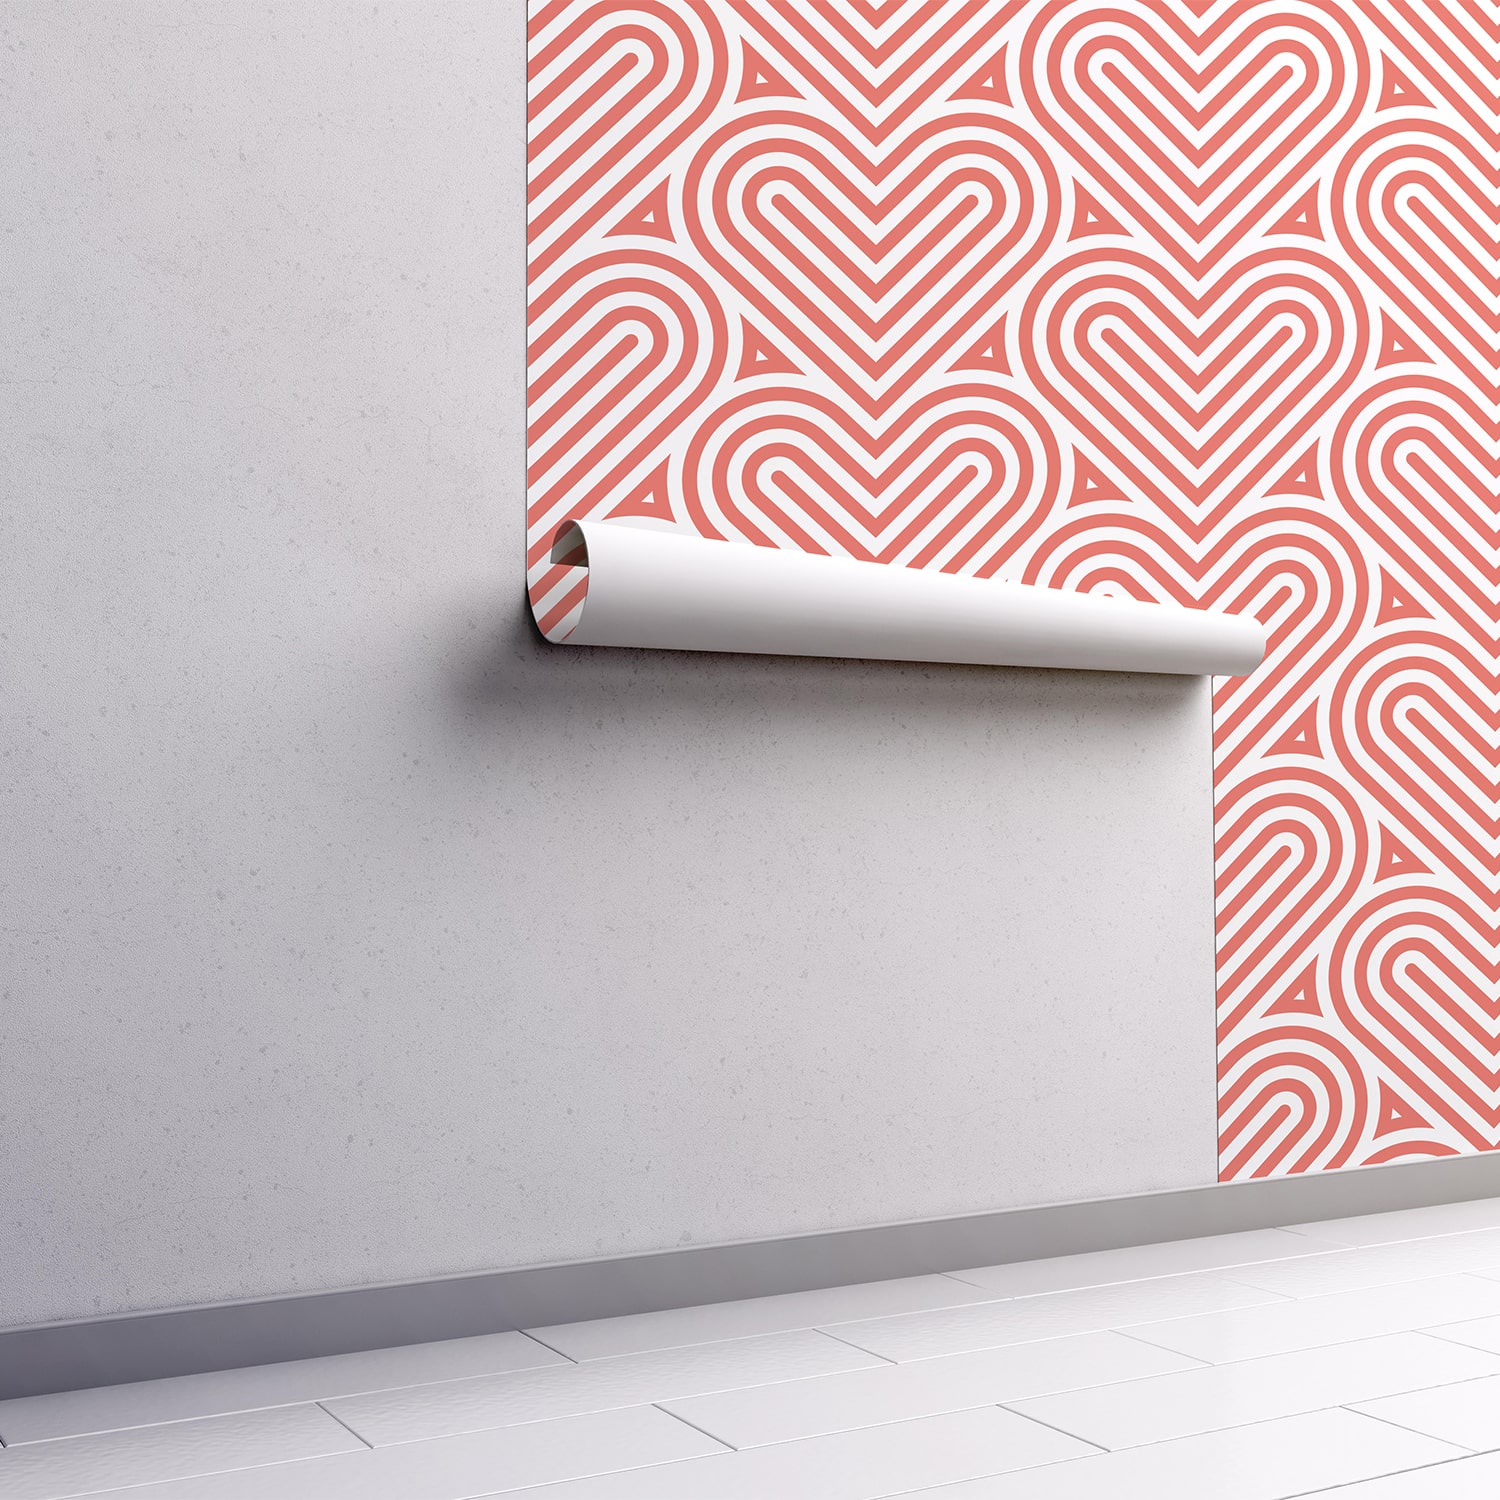 PP51-mur.rouleau-papier-peint-adhesif-decoratif-revetement-vinyle-coeurs-abstraits-renovation-meuble-mur-min